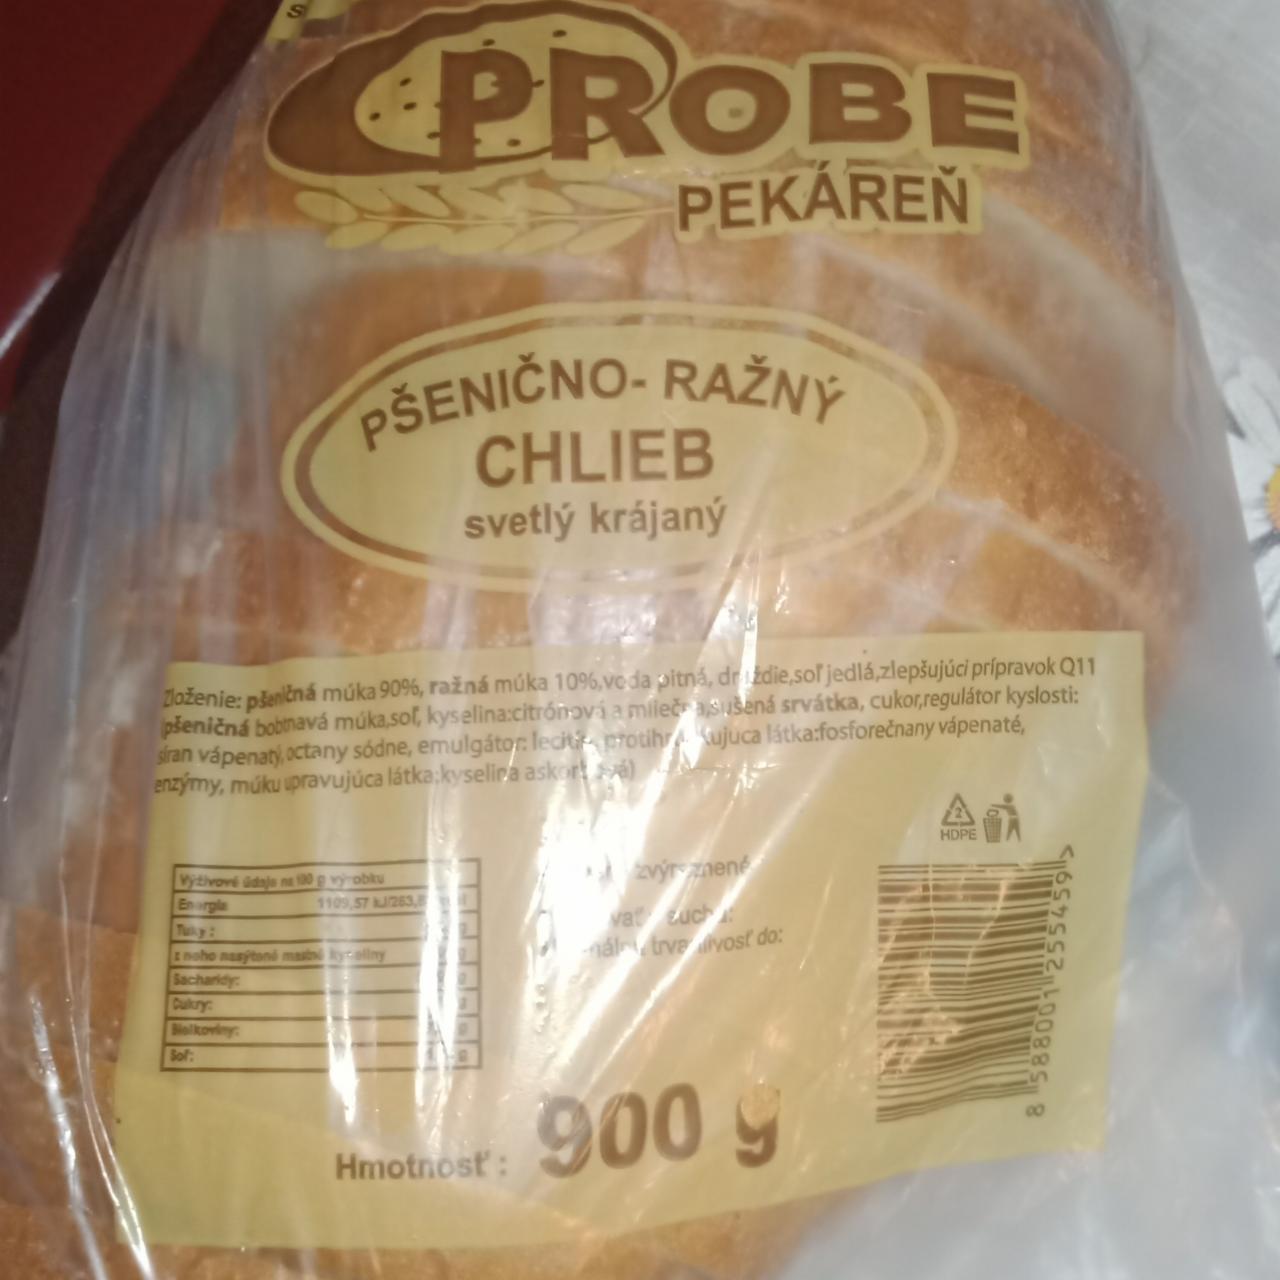 Fotografie - Pšenično-ražný chlieb svetlý krájaný Probe Pekáreň